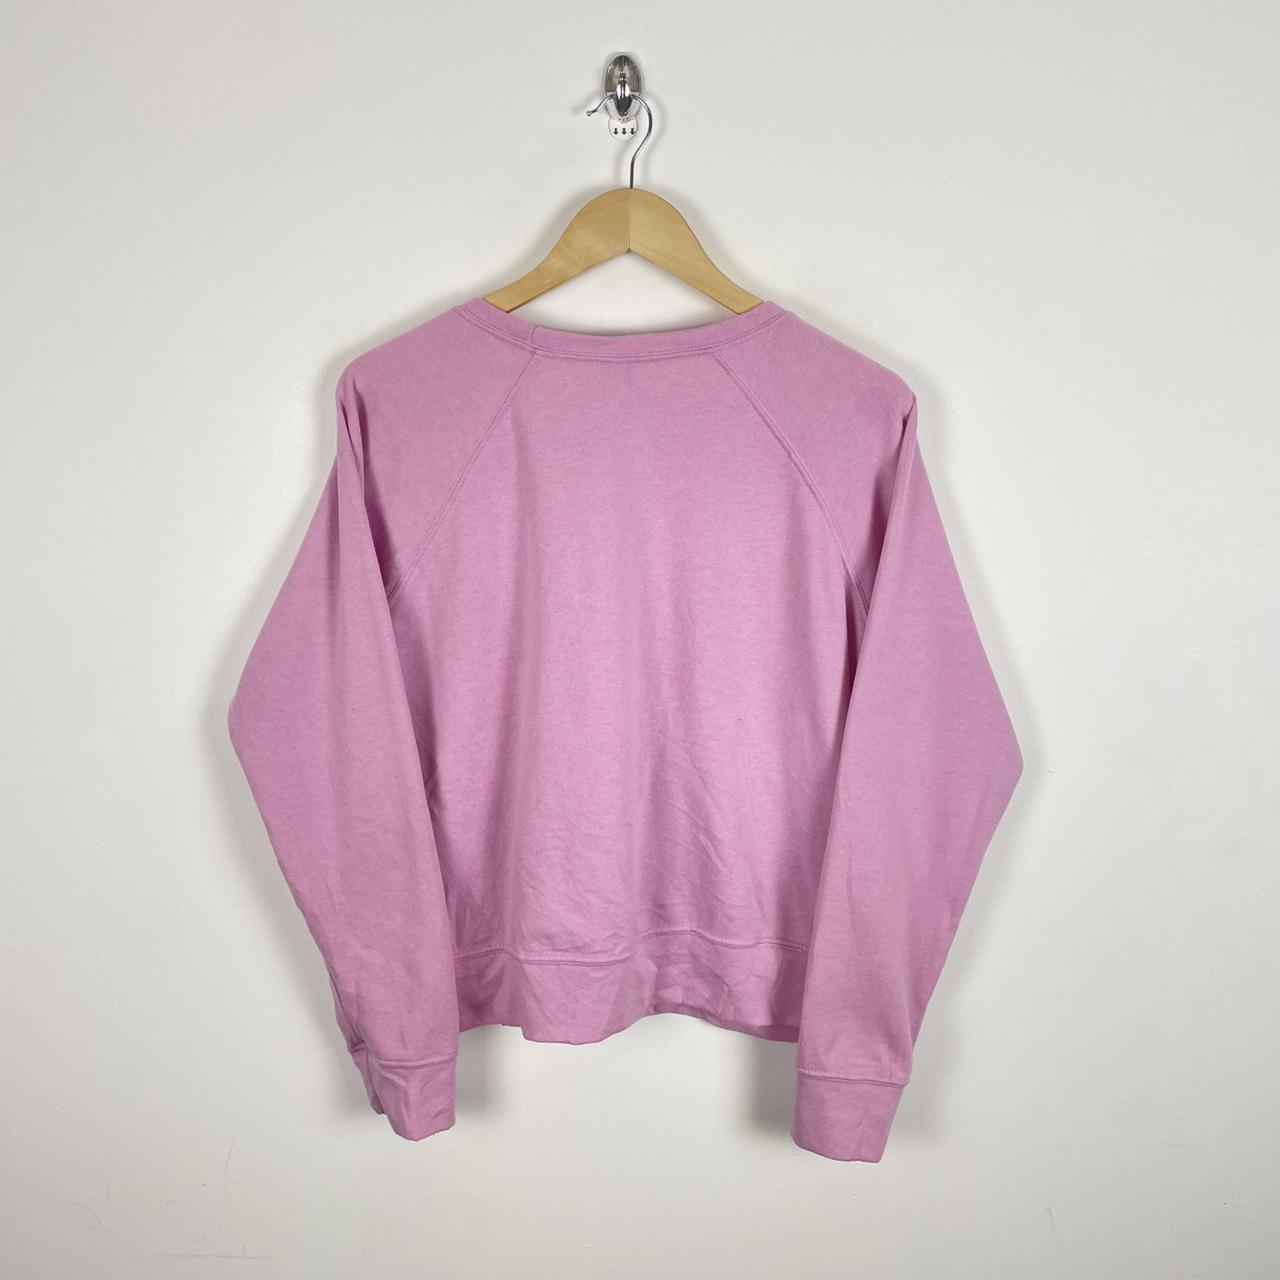 Circle X Vintage Y2K Blank Sweatshirt Pink Colour... - Depop